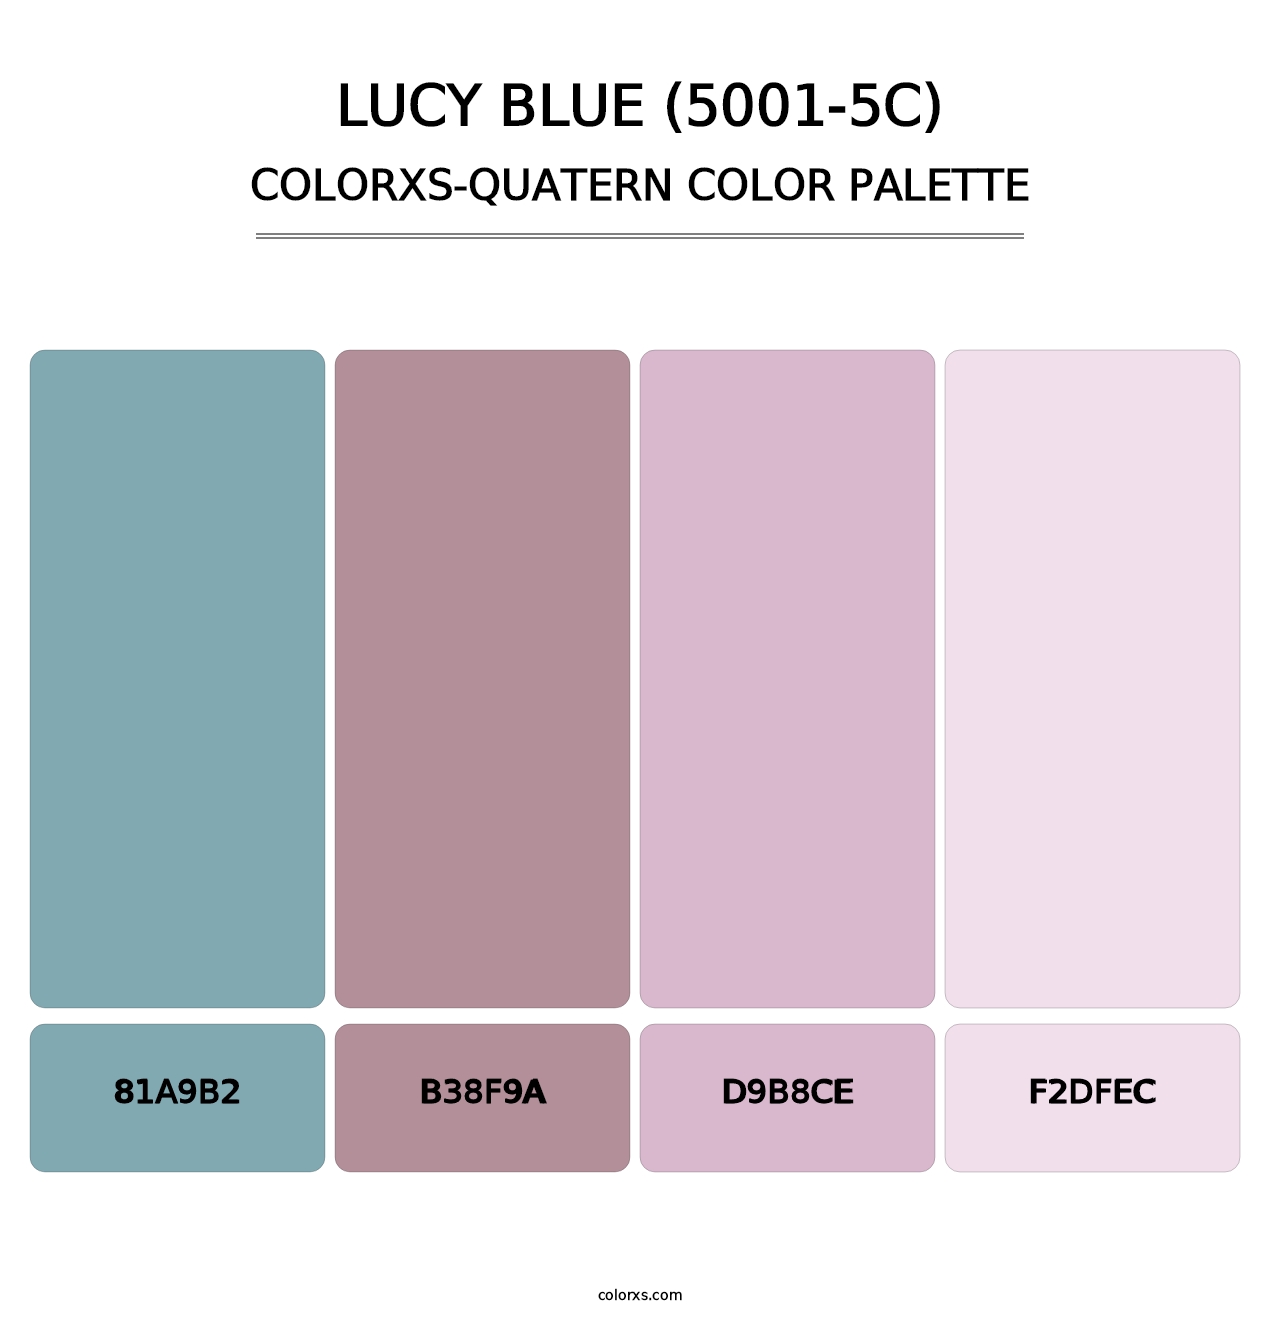 Lucy Blue (5001-5C) - Colorxs Quatern Palette